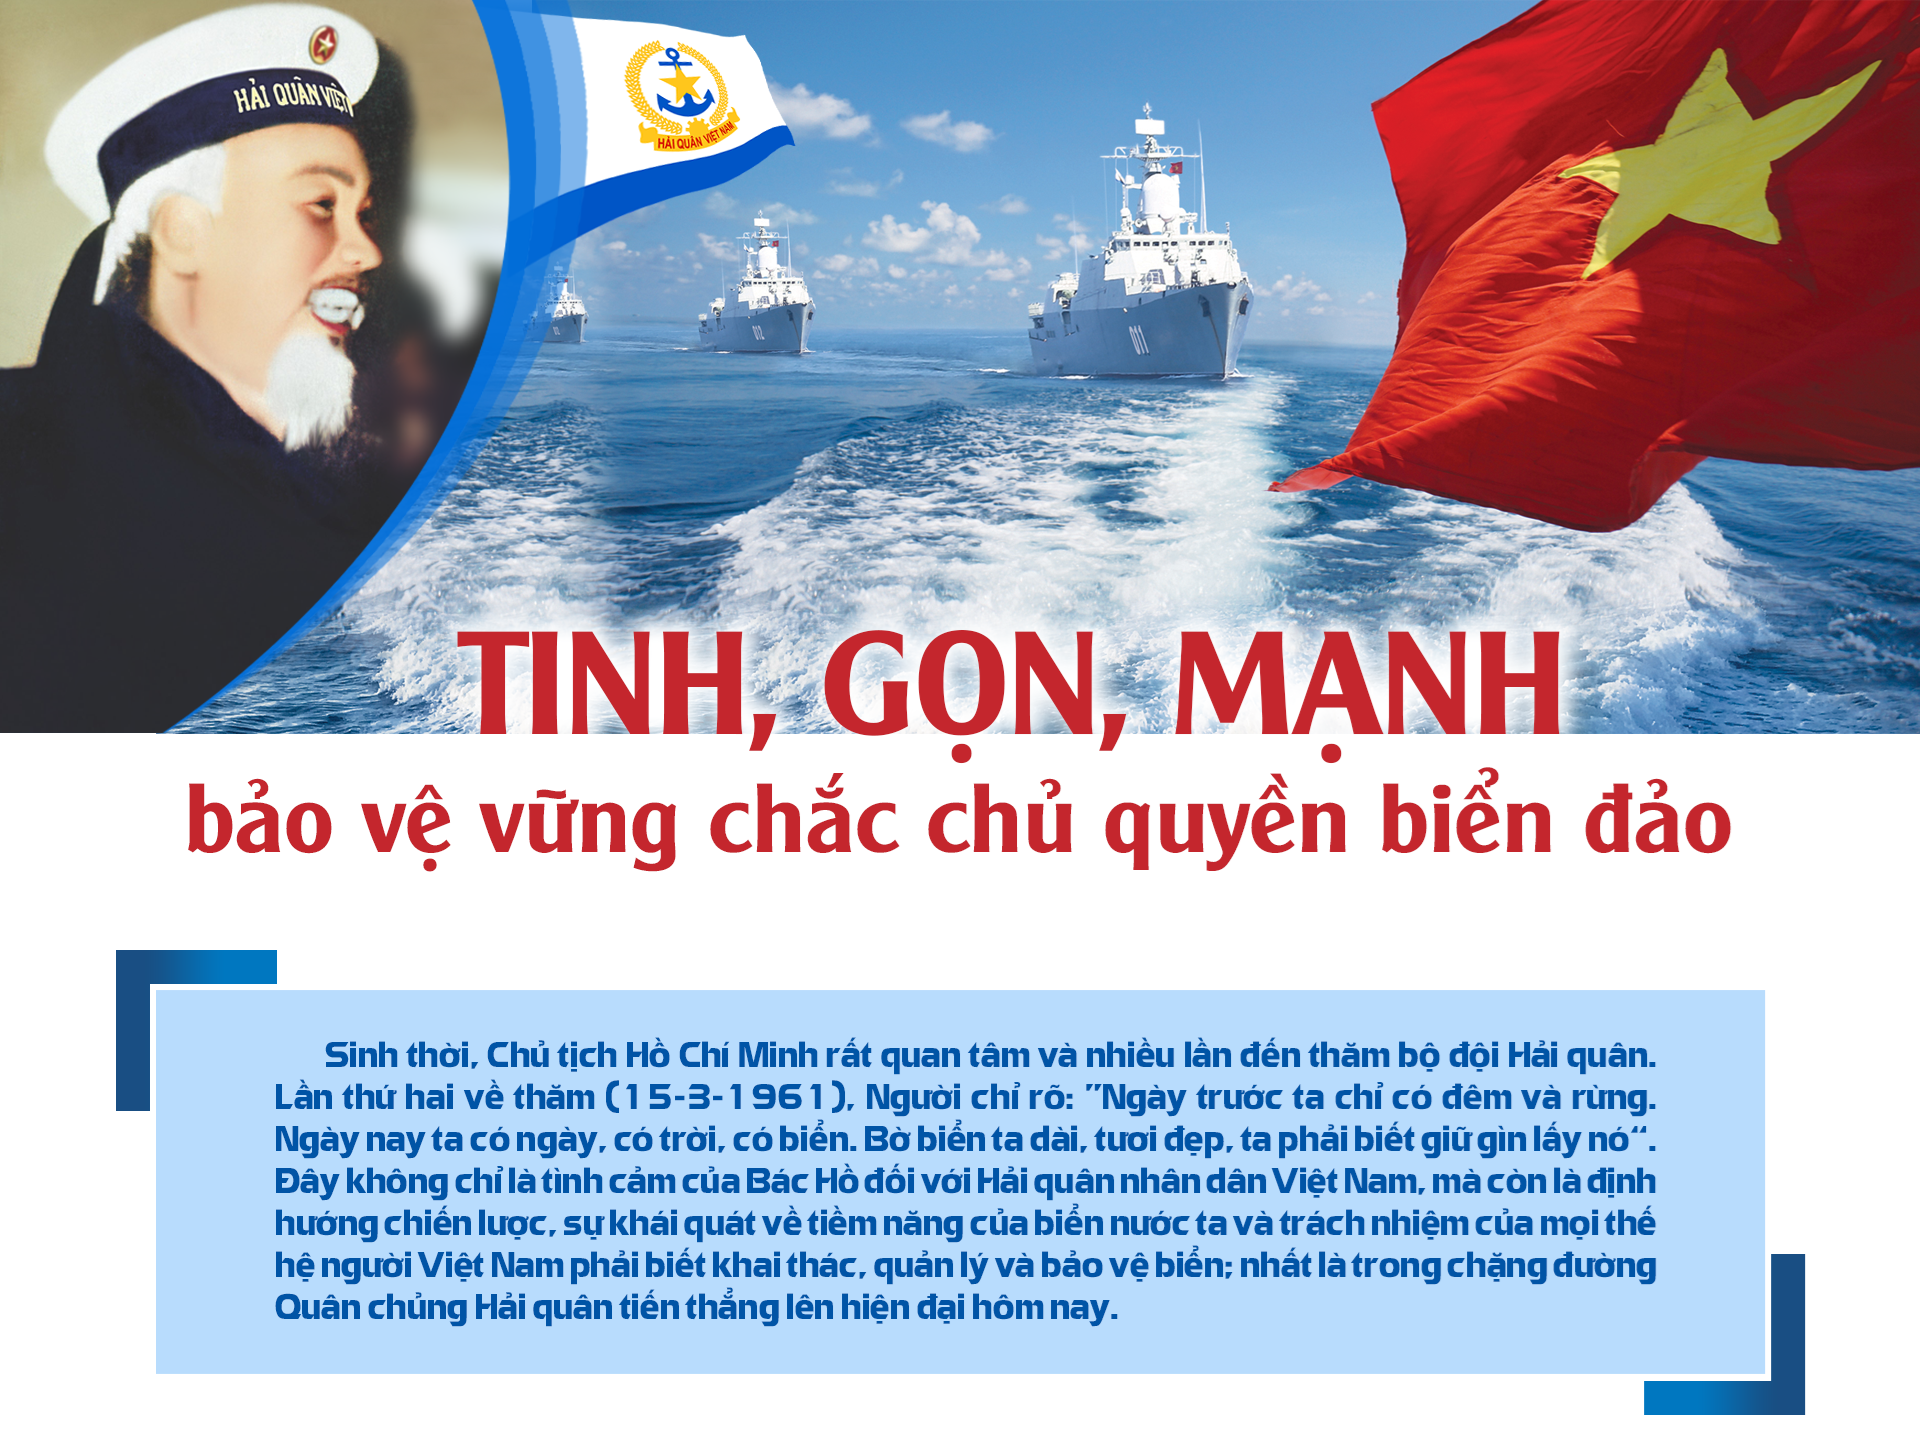 Chủ quyền biển đảo: Biển đảo luôn là một phần không thể thiếu của Tổ quốc, và chủ quyền biển đảo là một trong những vấn đề quan trọng nhất của đất nước. Hãy xem những hình ảnh về chủ quyền biển đảo để hiểu rõ thêm về tầm quan trọng của nó đối với sự phát triển của Việt Nam.